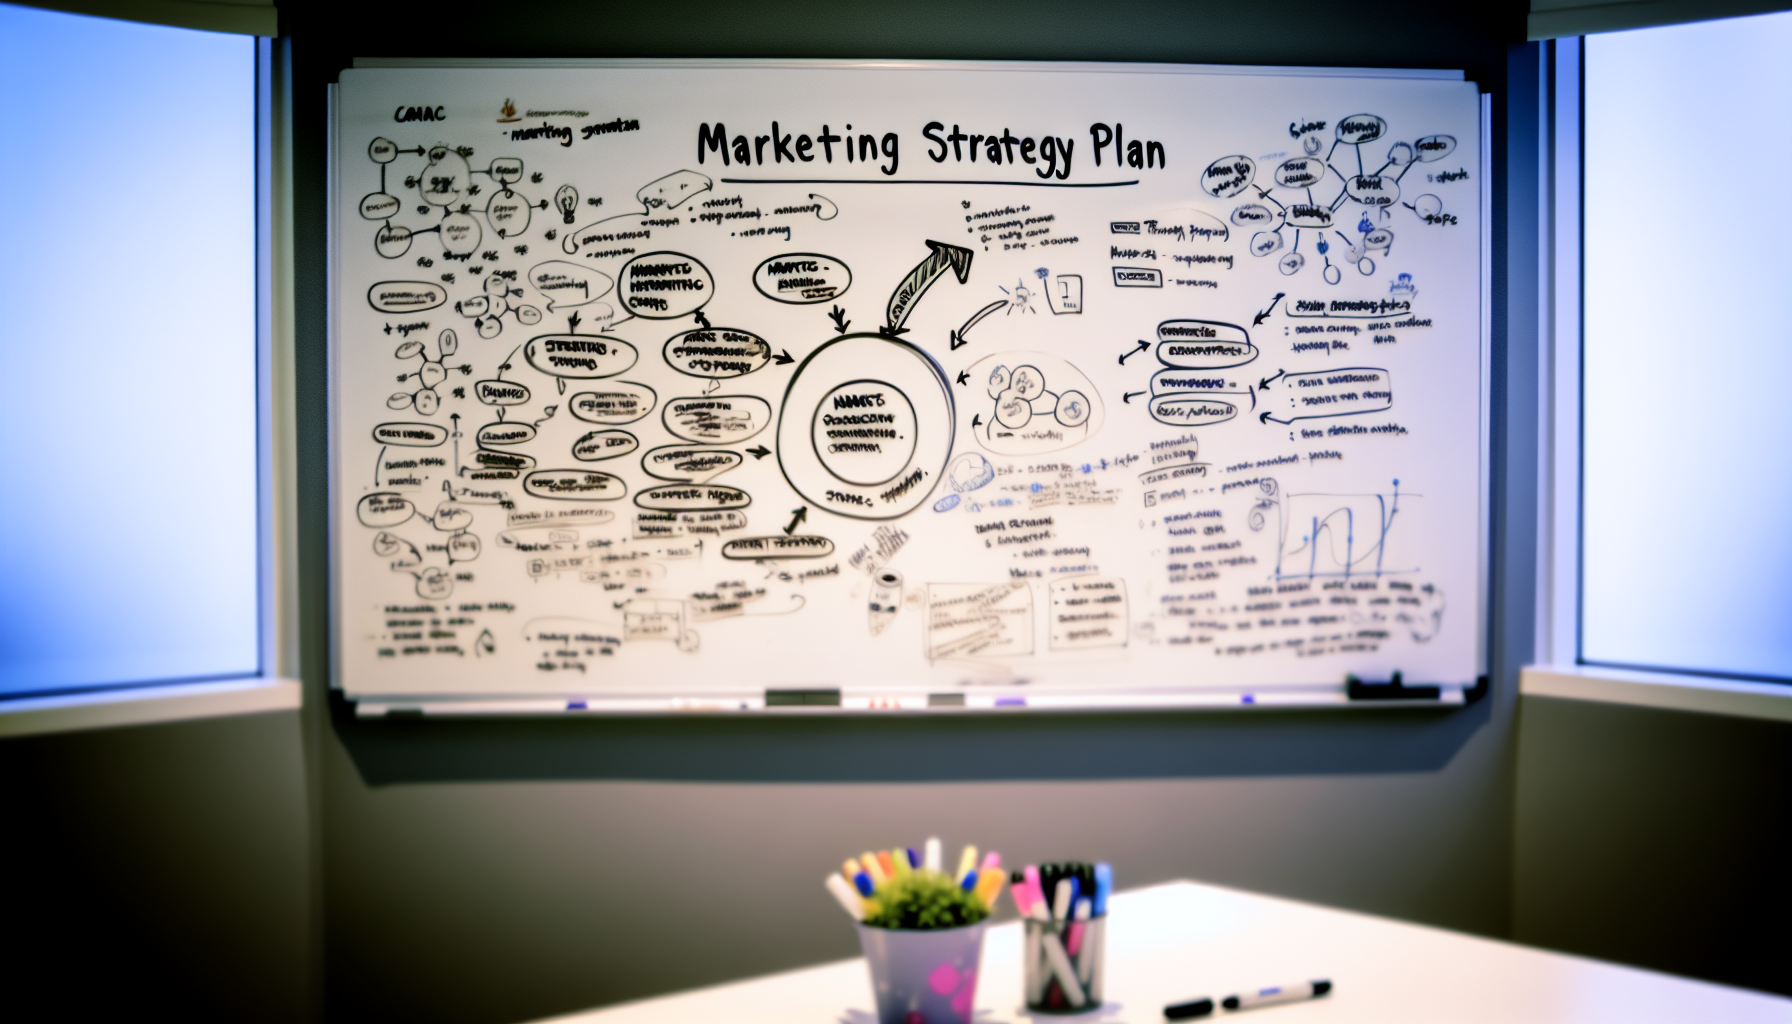 Een whiteboard met daarop een marketingstrategieplan geschreven, omgeven door brainstormnotities en ideeën.